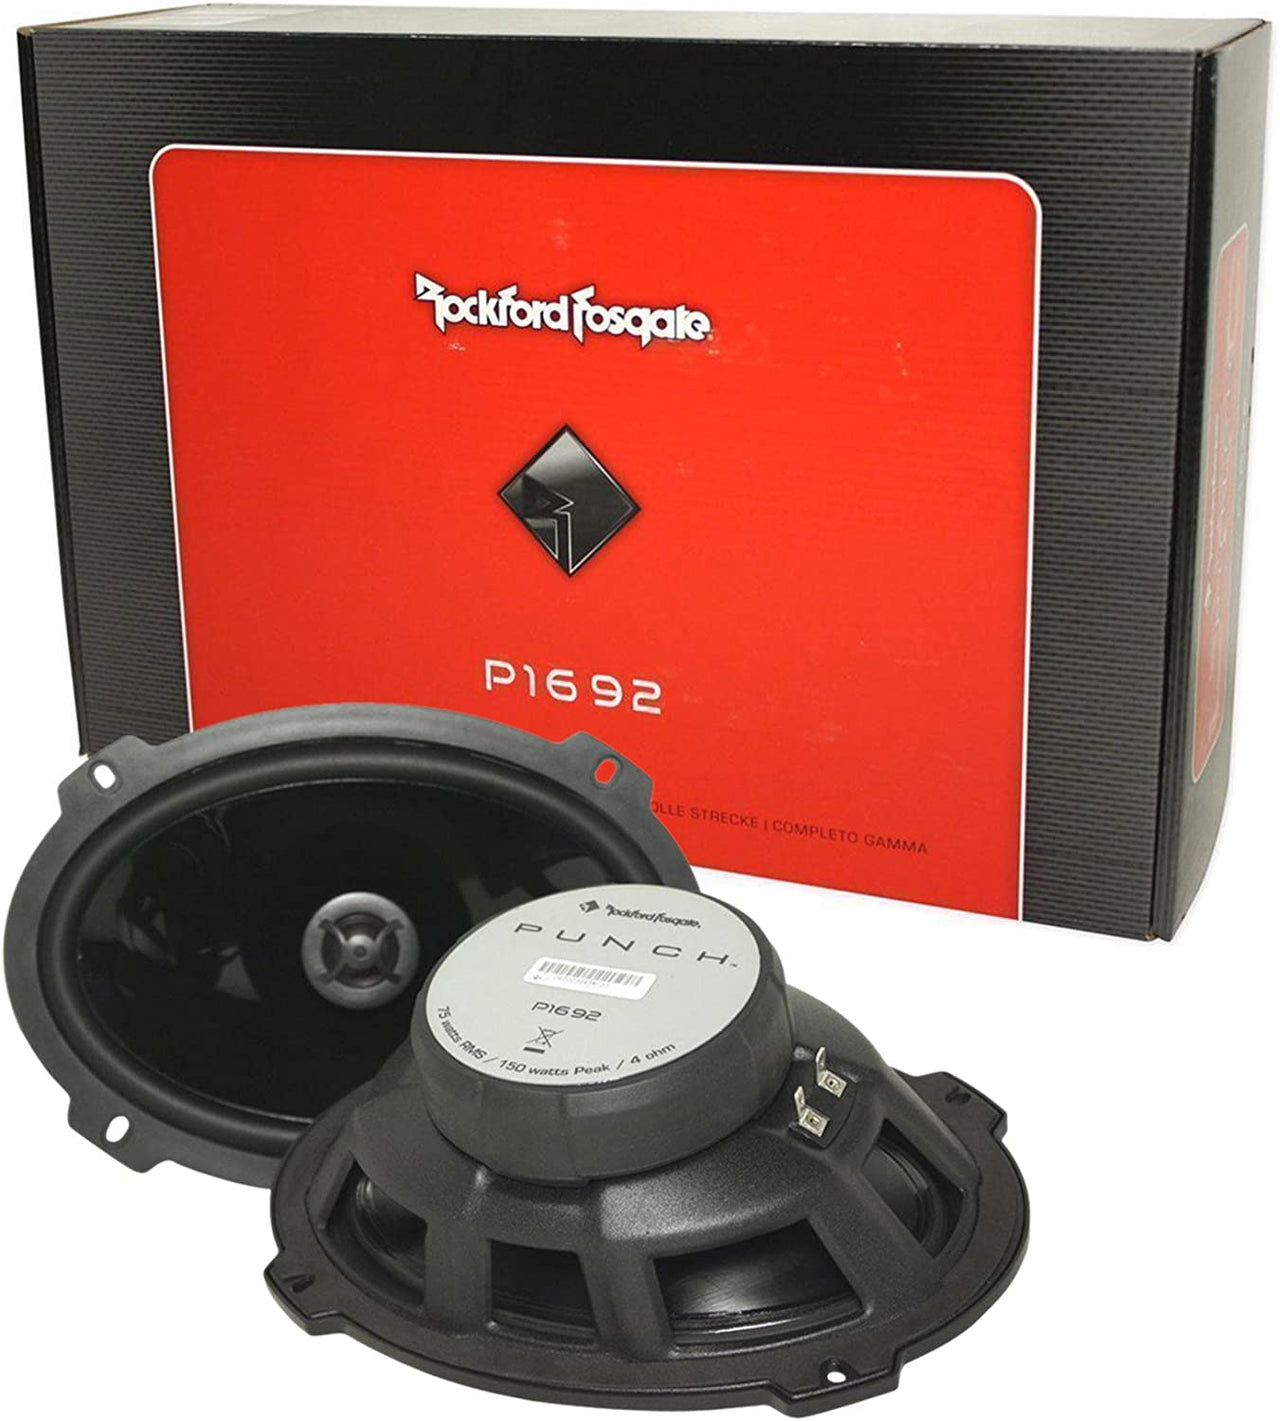 2 Rockford Fosgate P1572 5x7" 120W + 2 P1692 6x9" 150W 2 Way Car Speakers